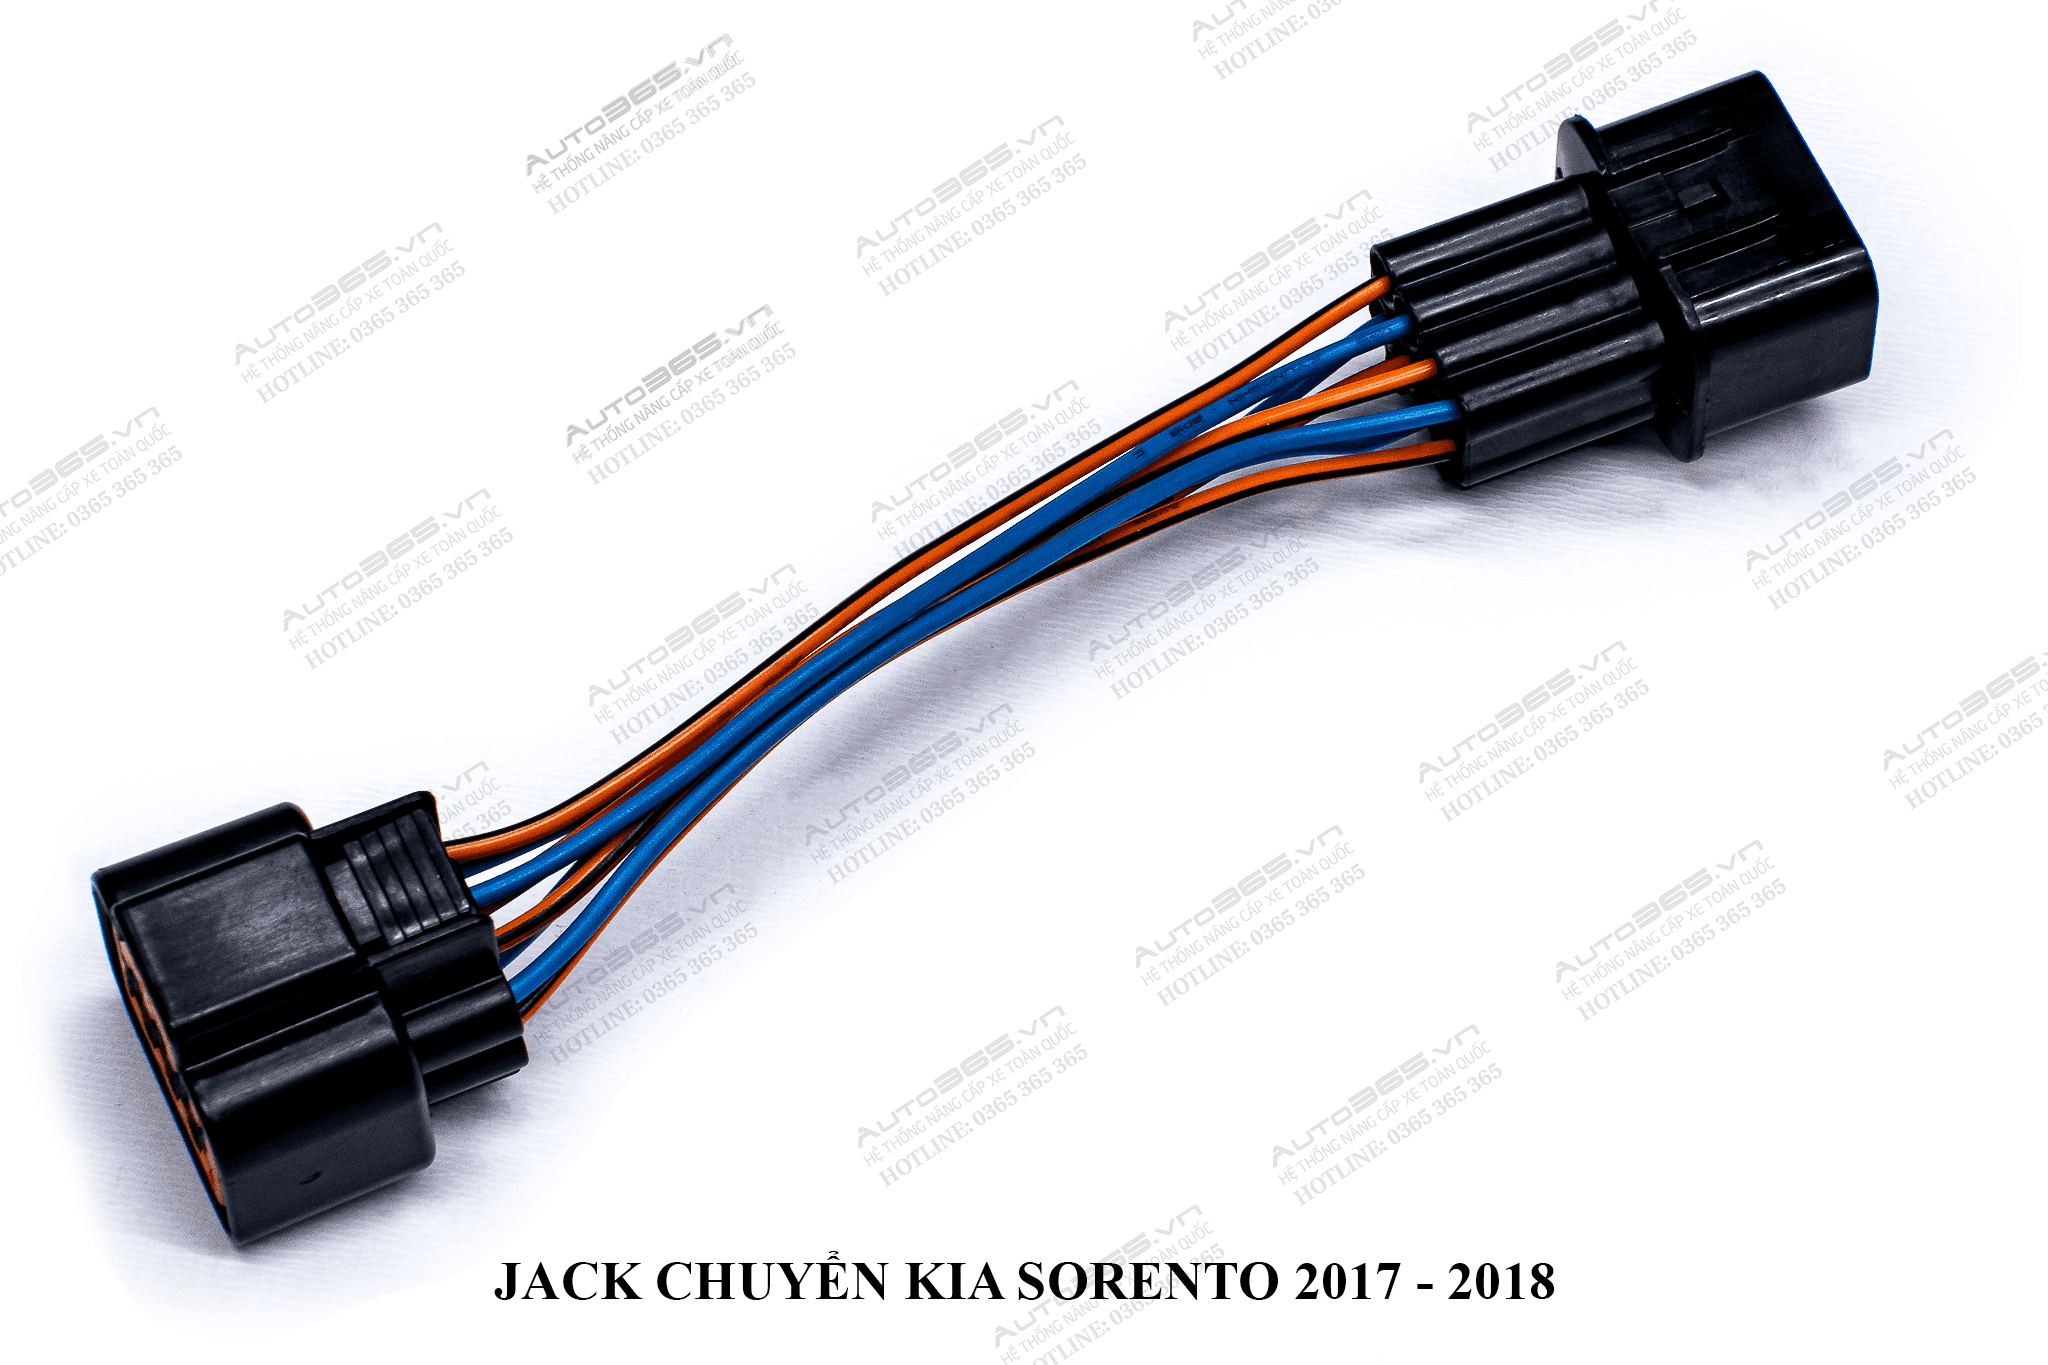 JACK KIA SORENTO 2017 - 2018